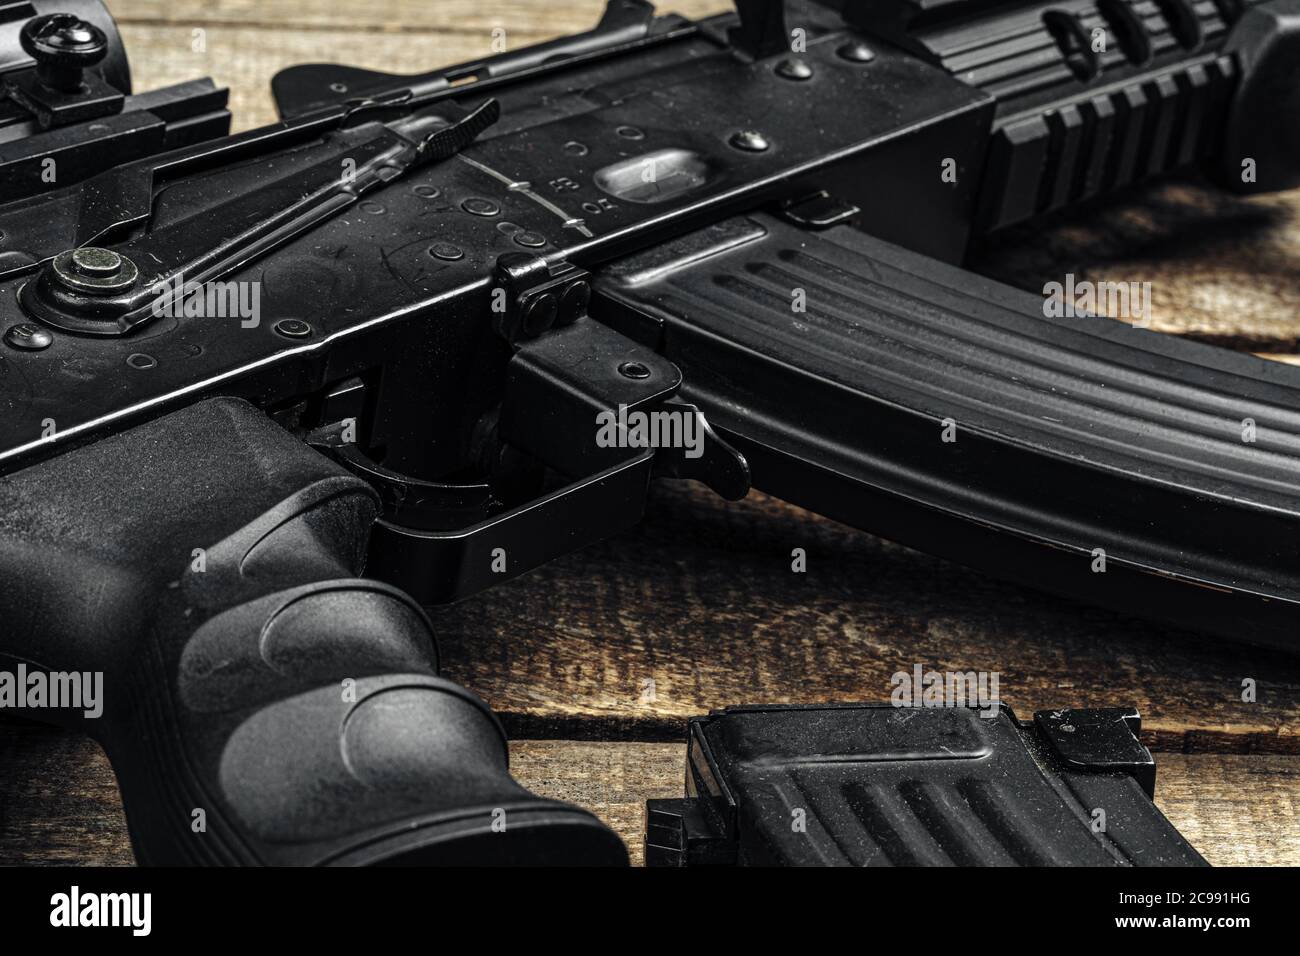 Rife automatico russo Ak-47 primo piano, arma militare Foto Stock